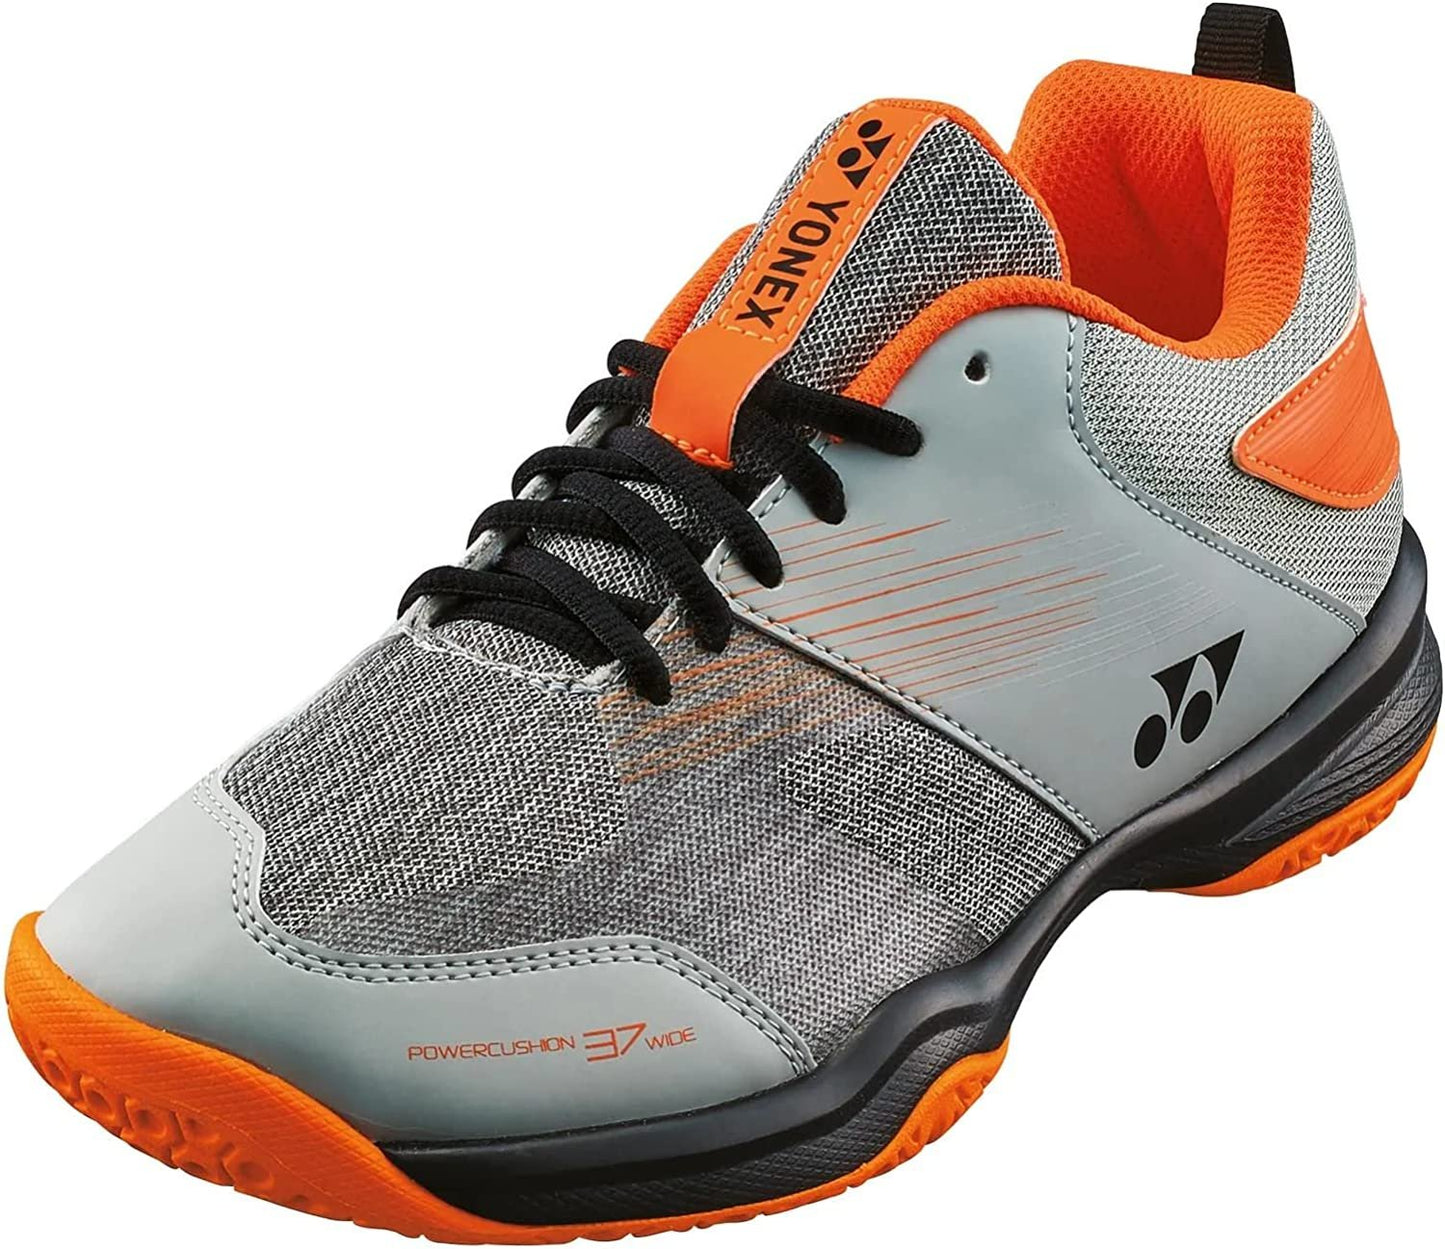 Yonex Power Cushion 37 Wide Badminton Shoe (Light Grey)